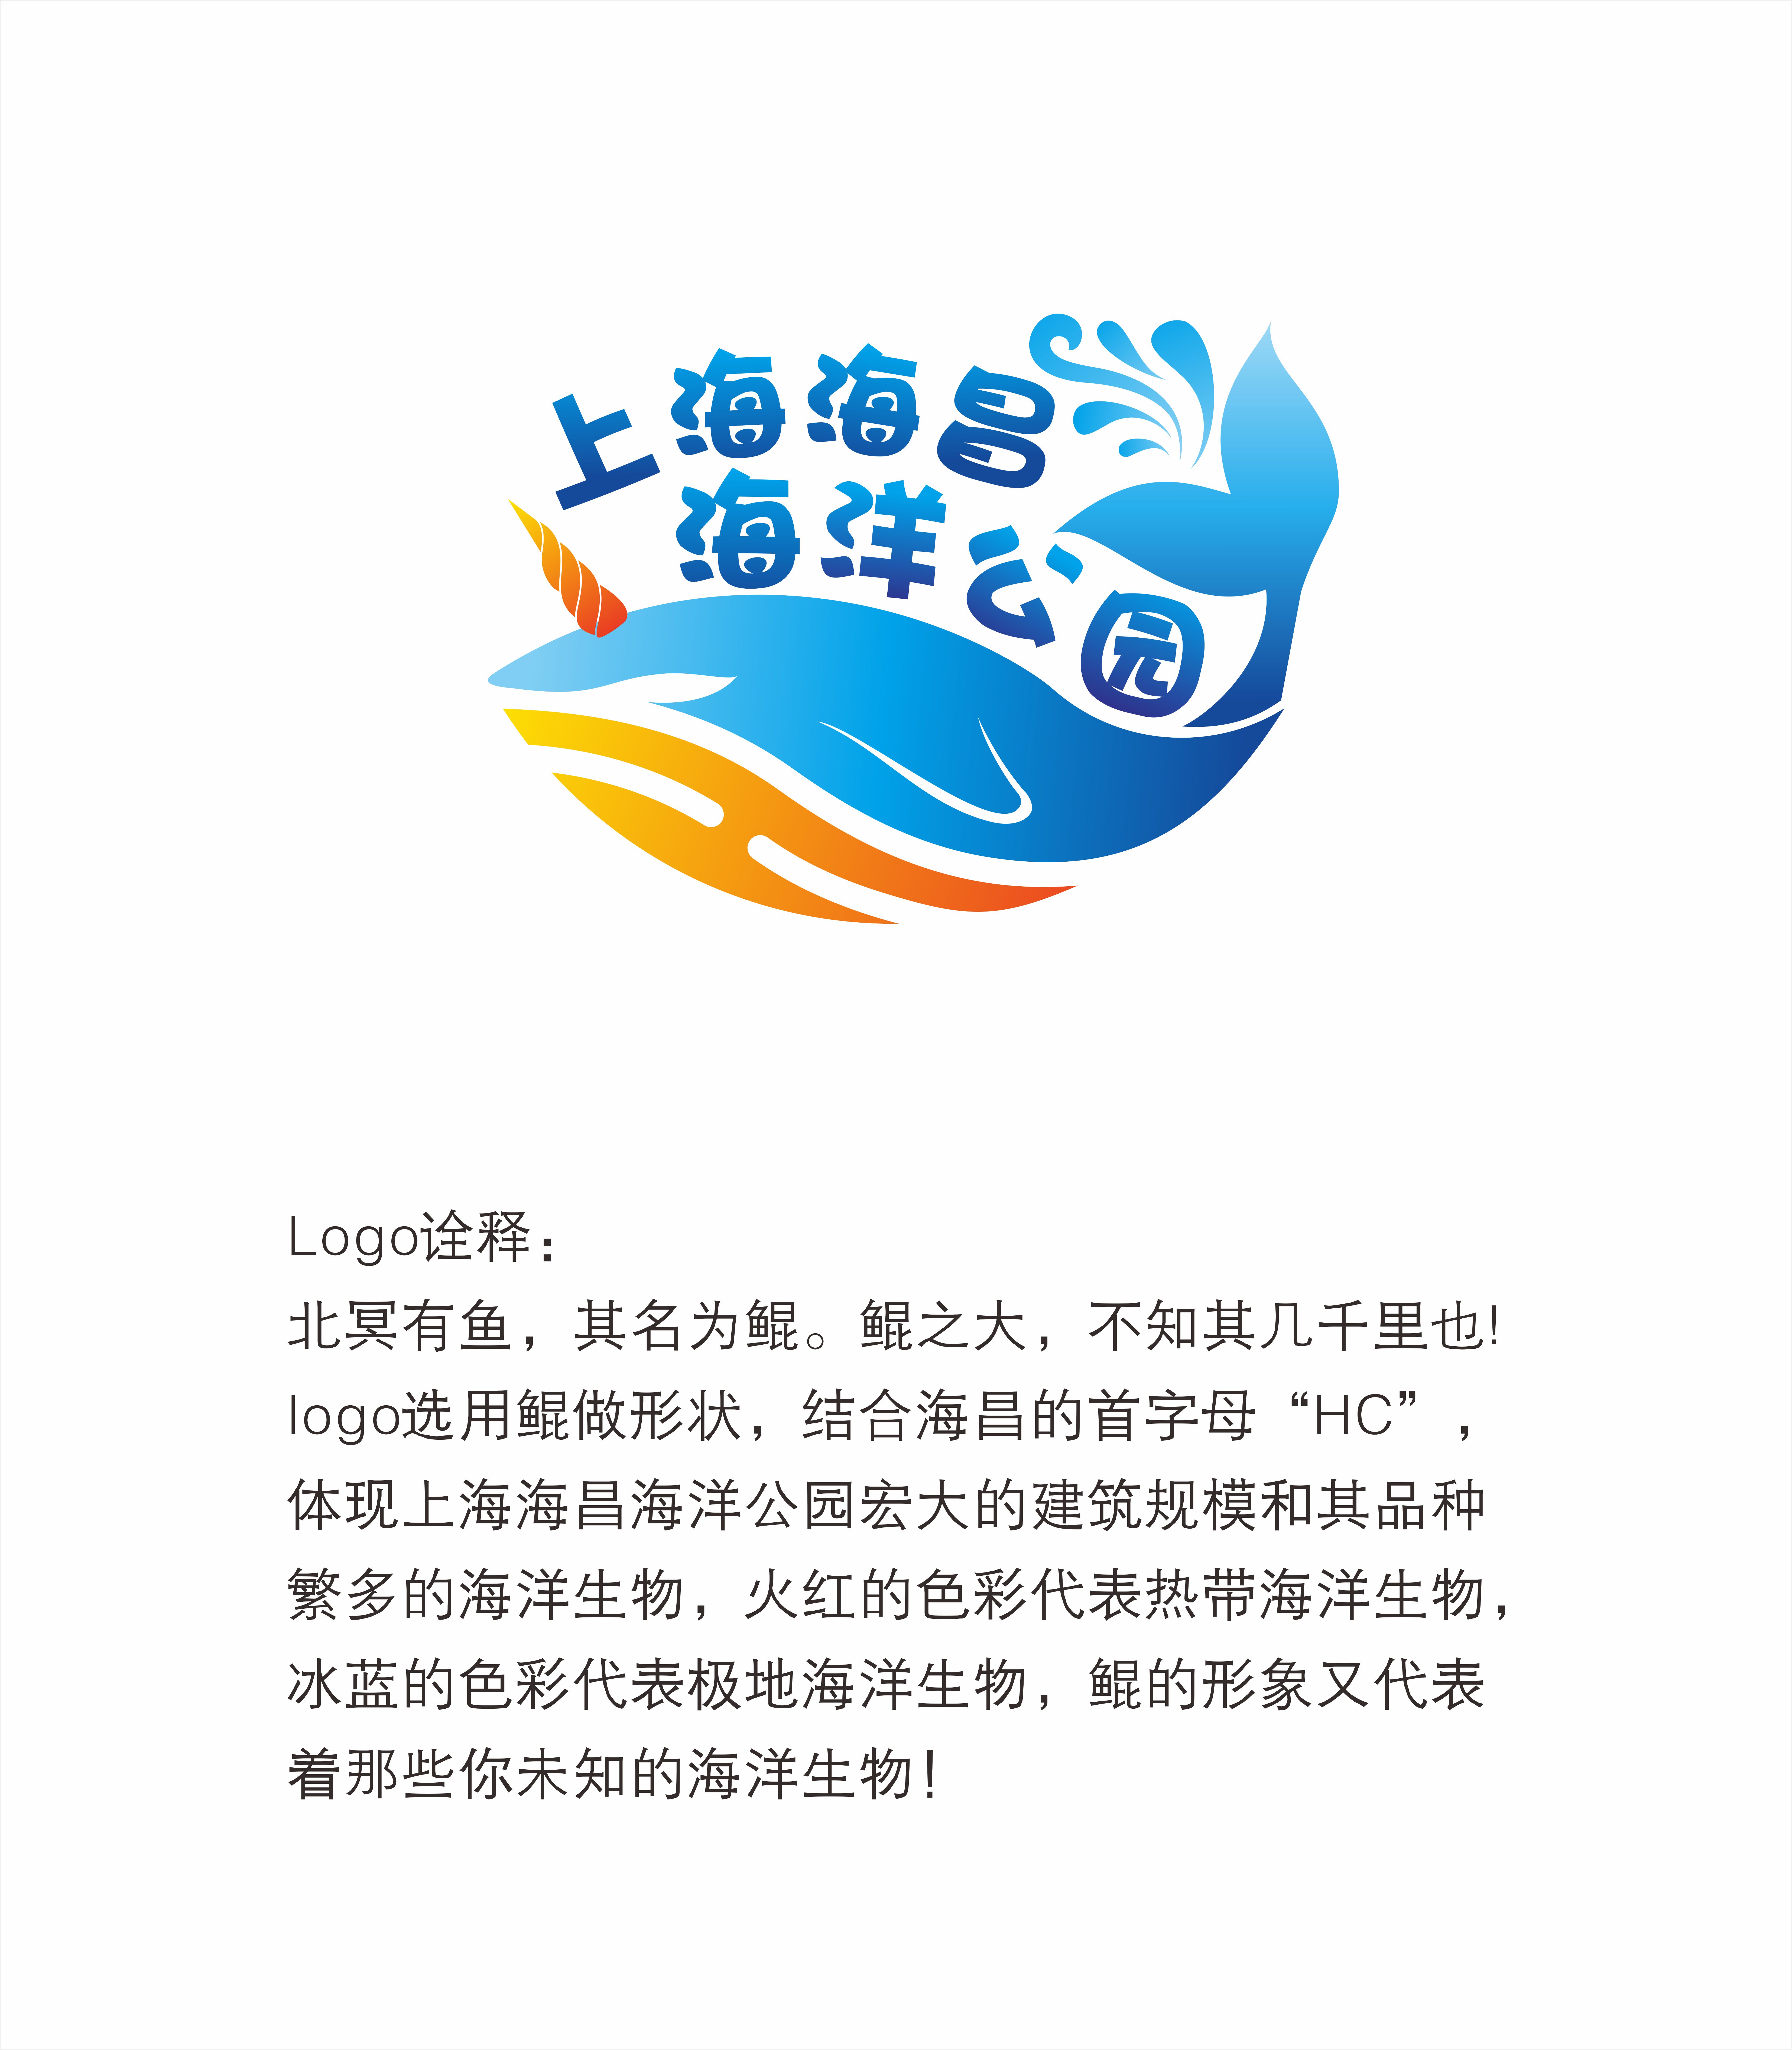 上海之鱼标志图片